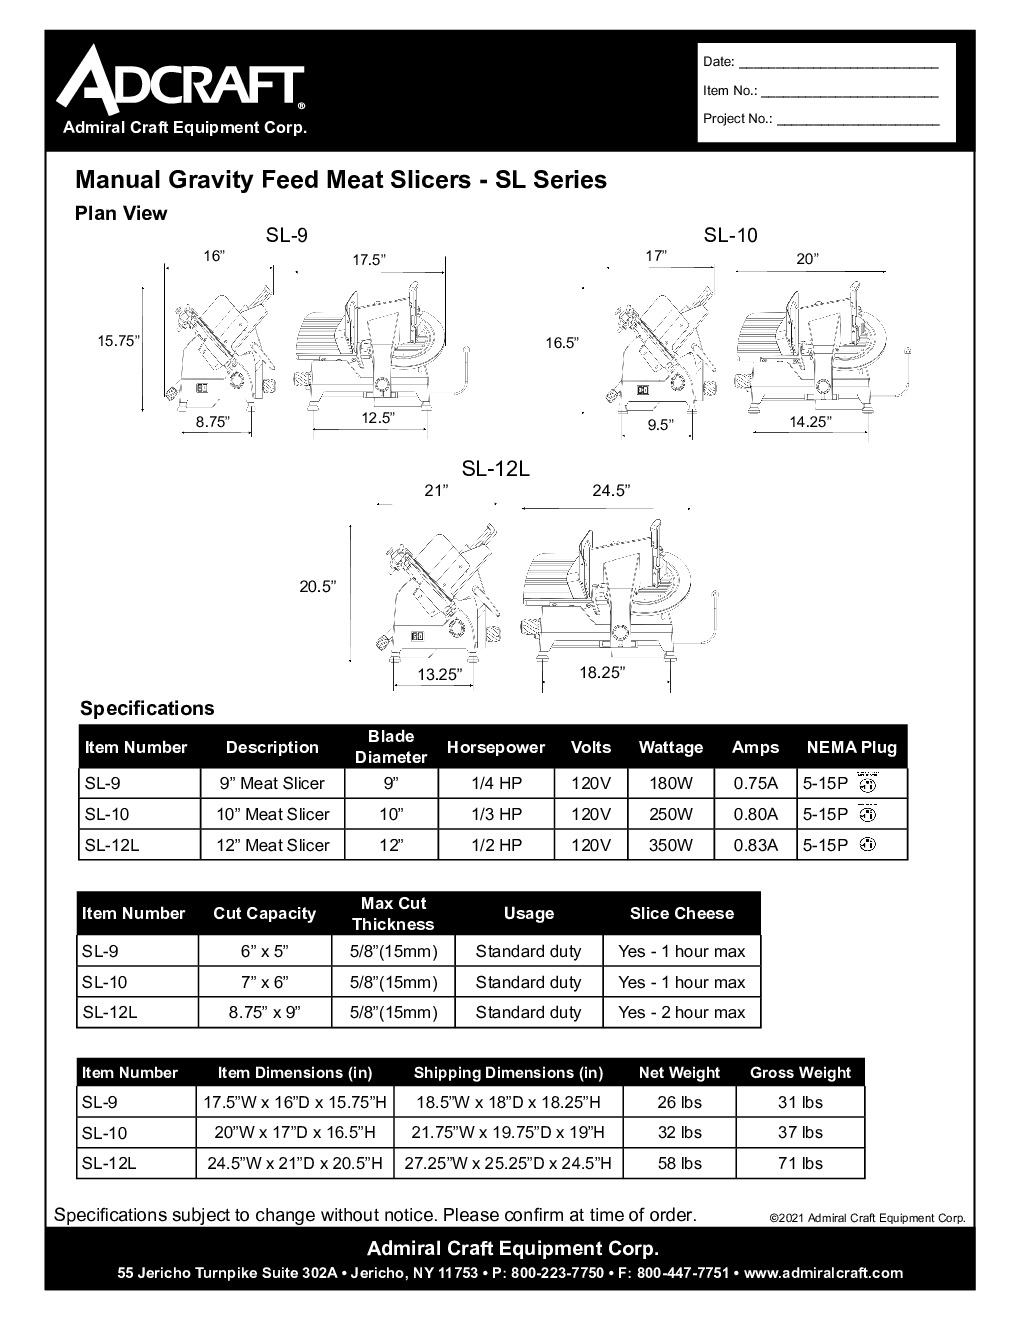 Adcraft SL-9 Heavy-Duty Manual Gravity Feed Meat Slicer w/ 9